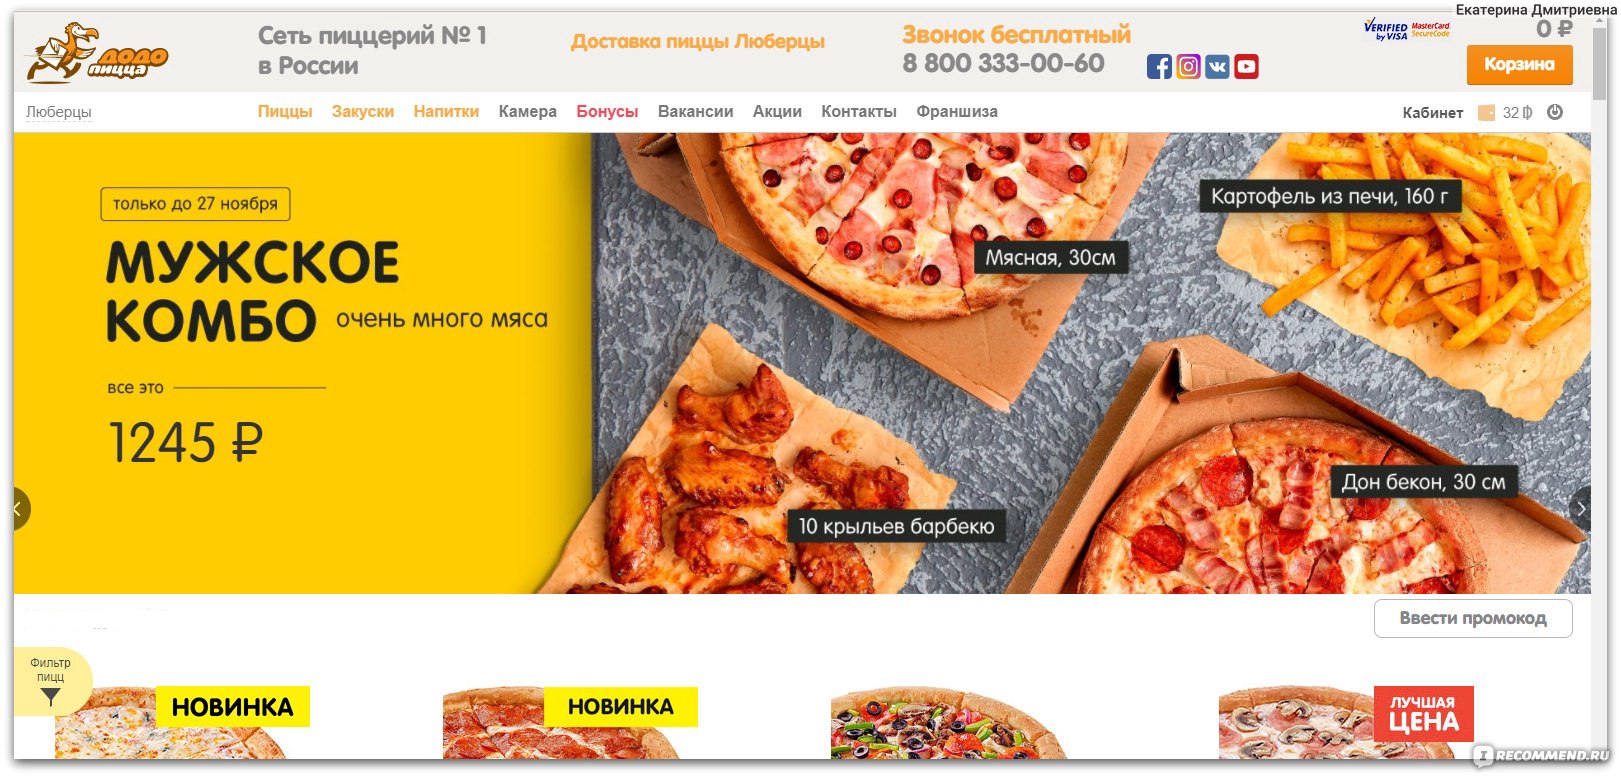 Бесплатный номер пиццы. Dodopizza реклама. Номер пиццерии Додо. Додо пицца меню. Dodopizza баннер.